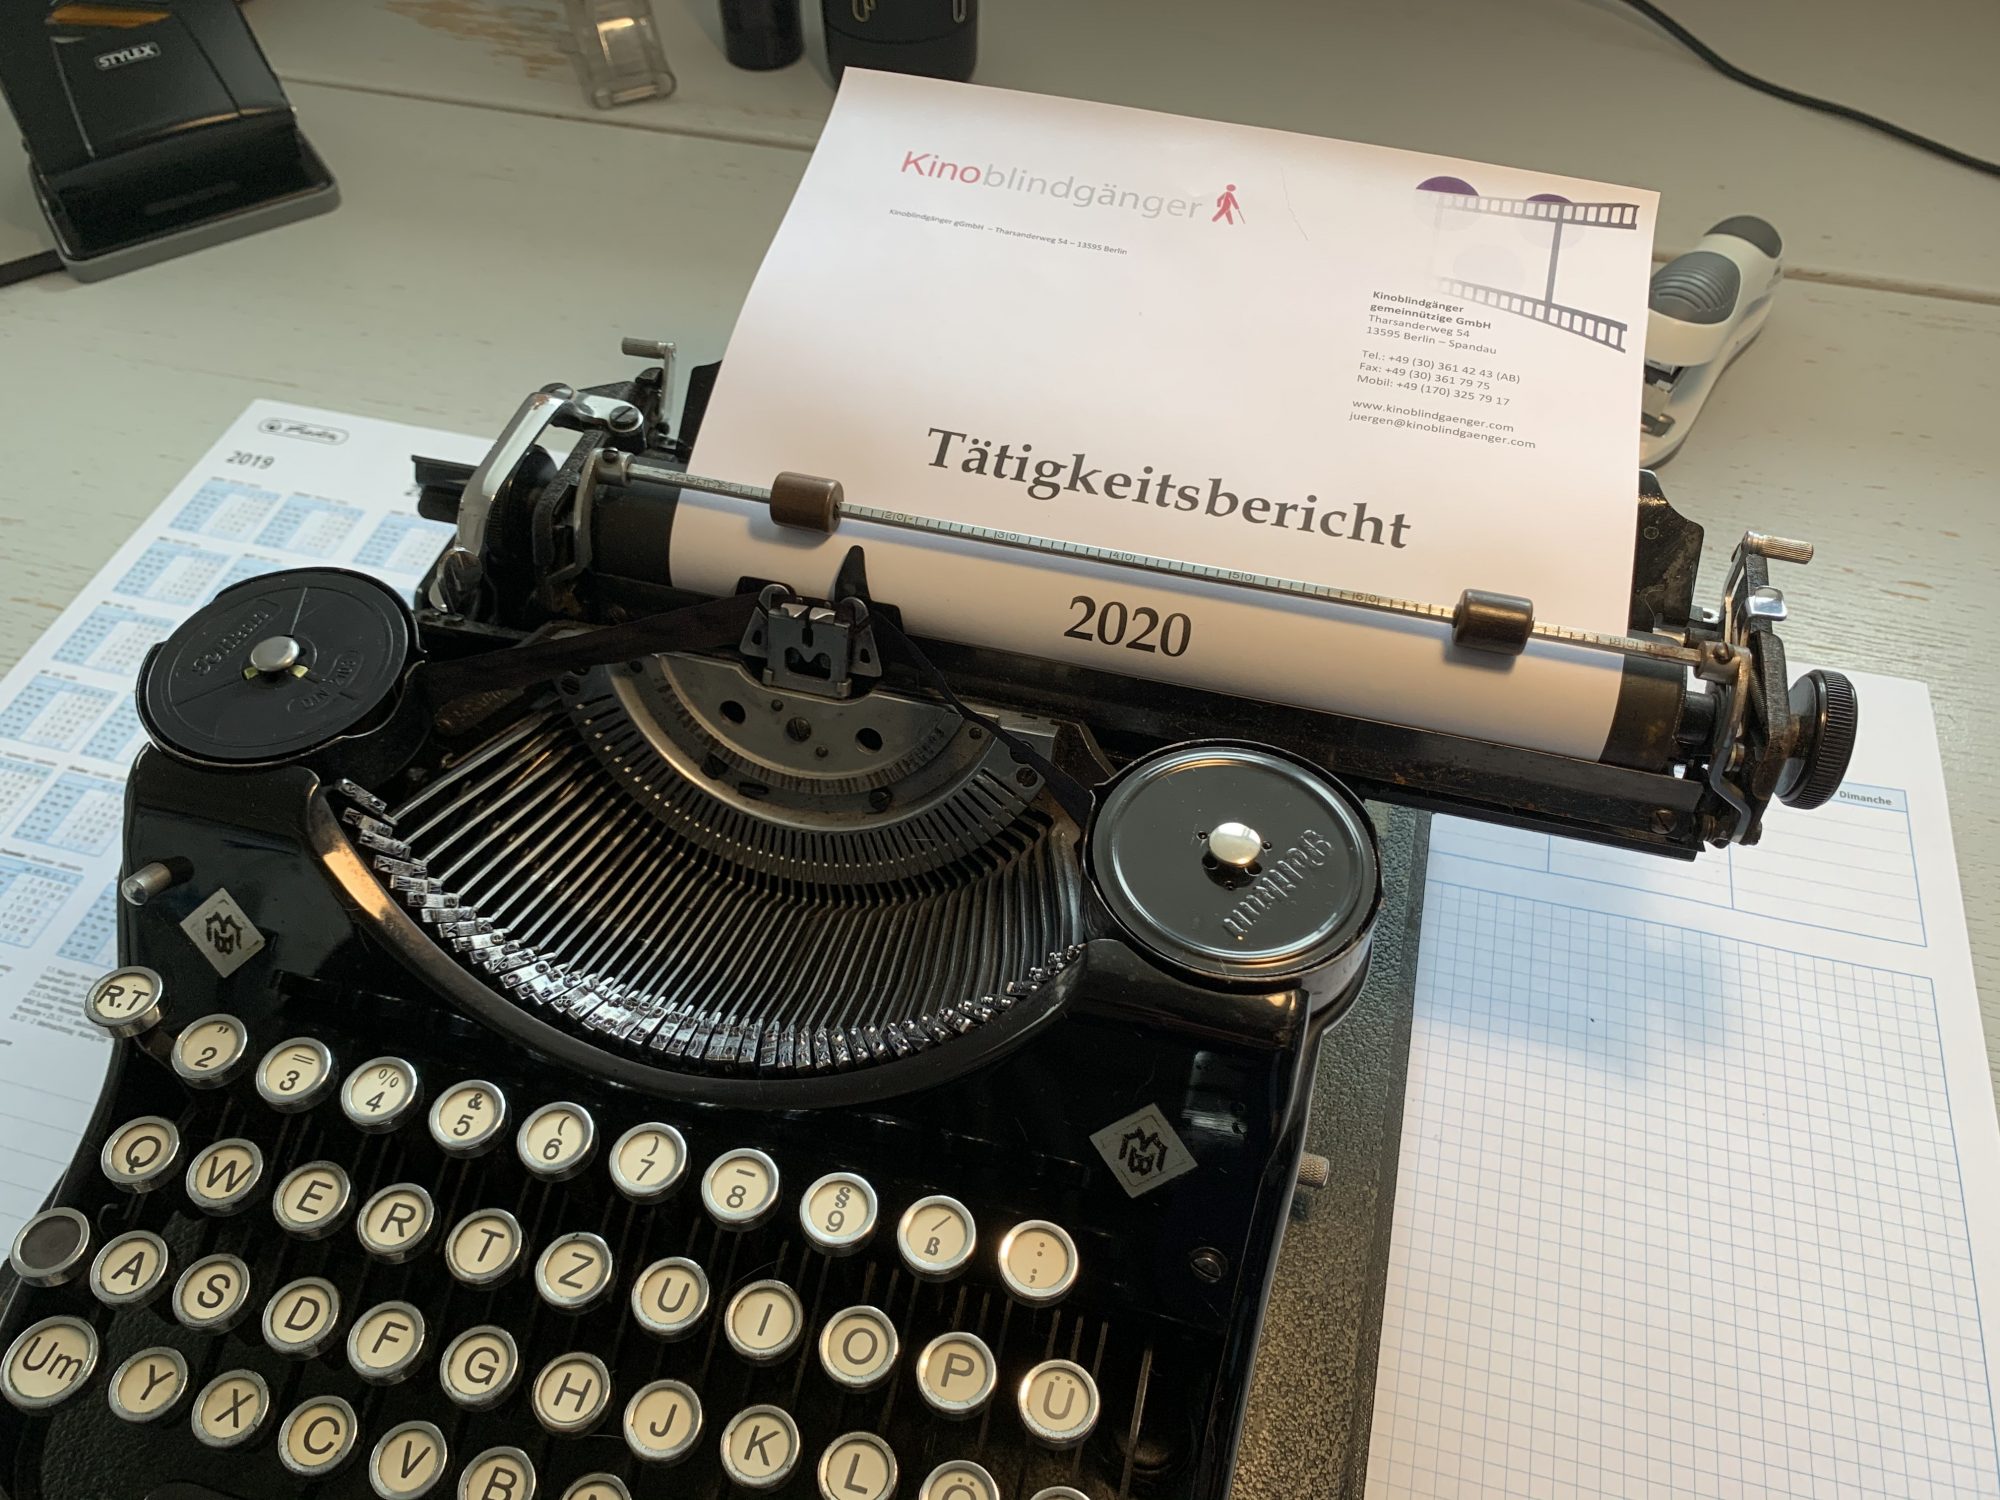 Eine alte schwarze Schreibmachine aus den dreißiger Jahren. Eingespannt ist ein Briefbogen der Kinoblindgänger, darauf in großen Buchstaben die Überschrift "Tätigkeitsbericht 2020"